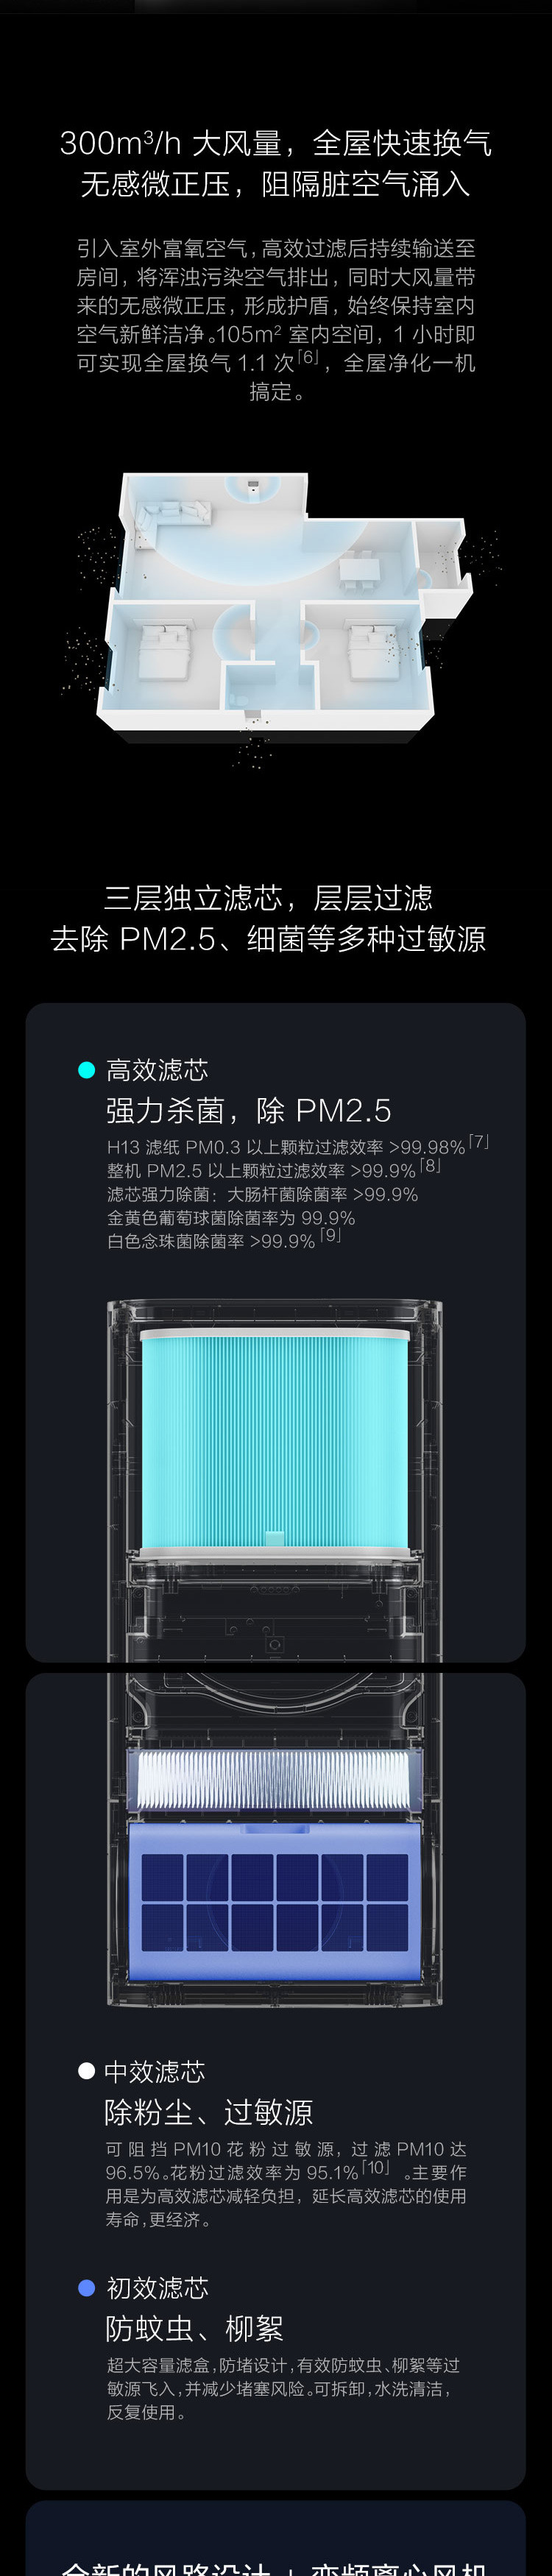 小米/MIUI 米家新风机 换气 过滤雾霾PM2.5 除甲醛 阻隔过敏源 智能控制